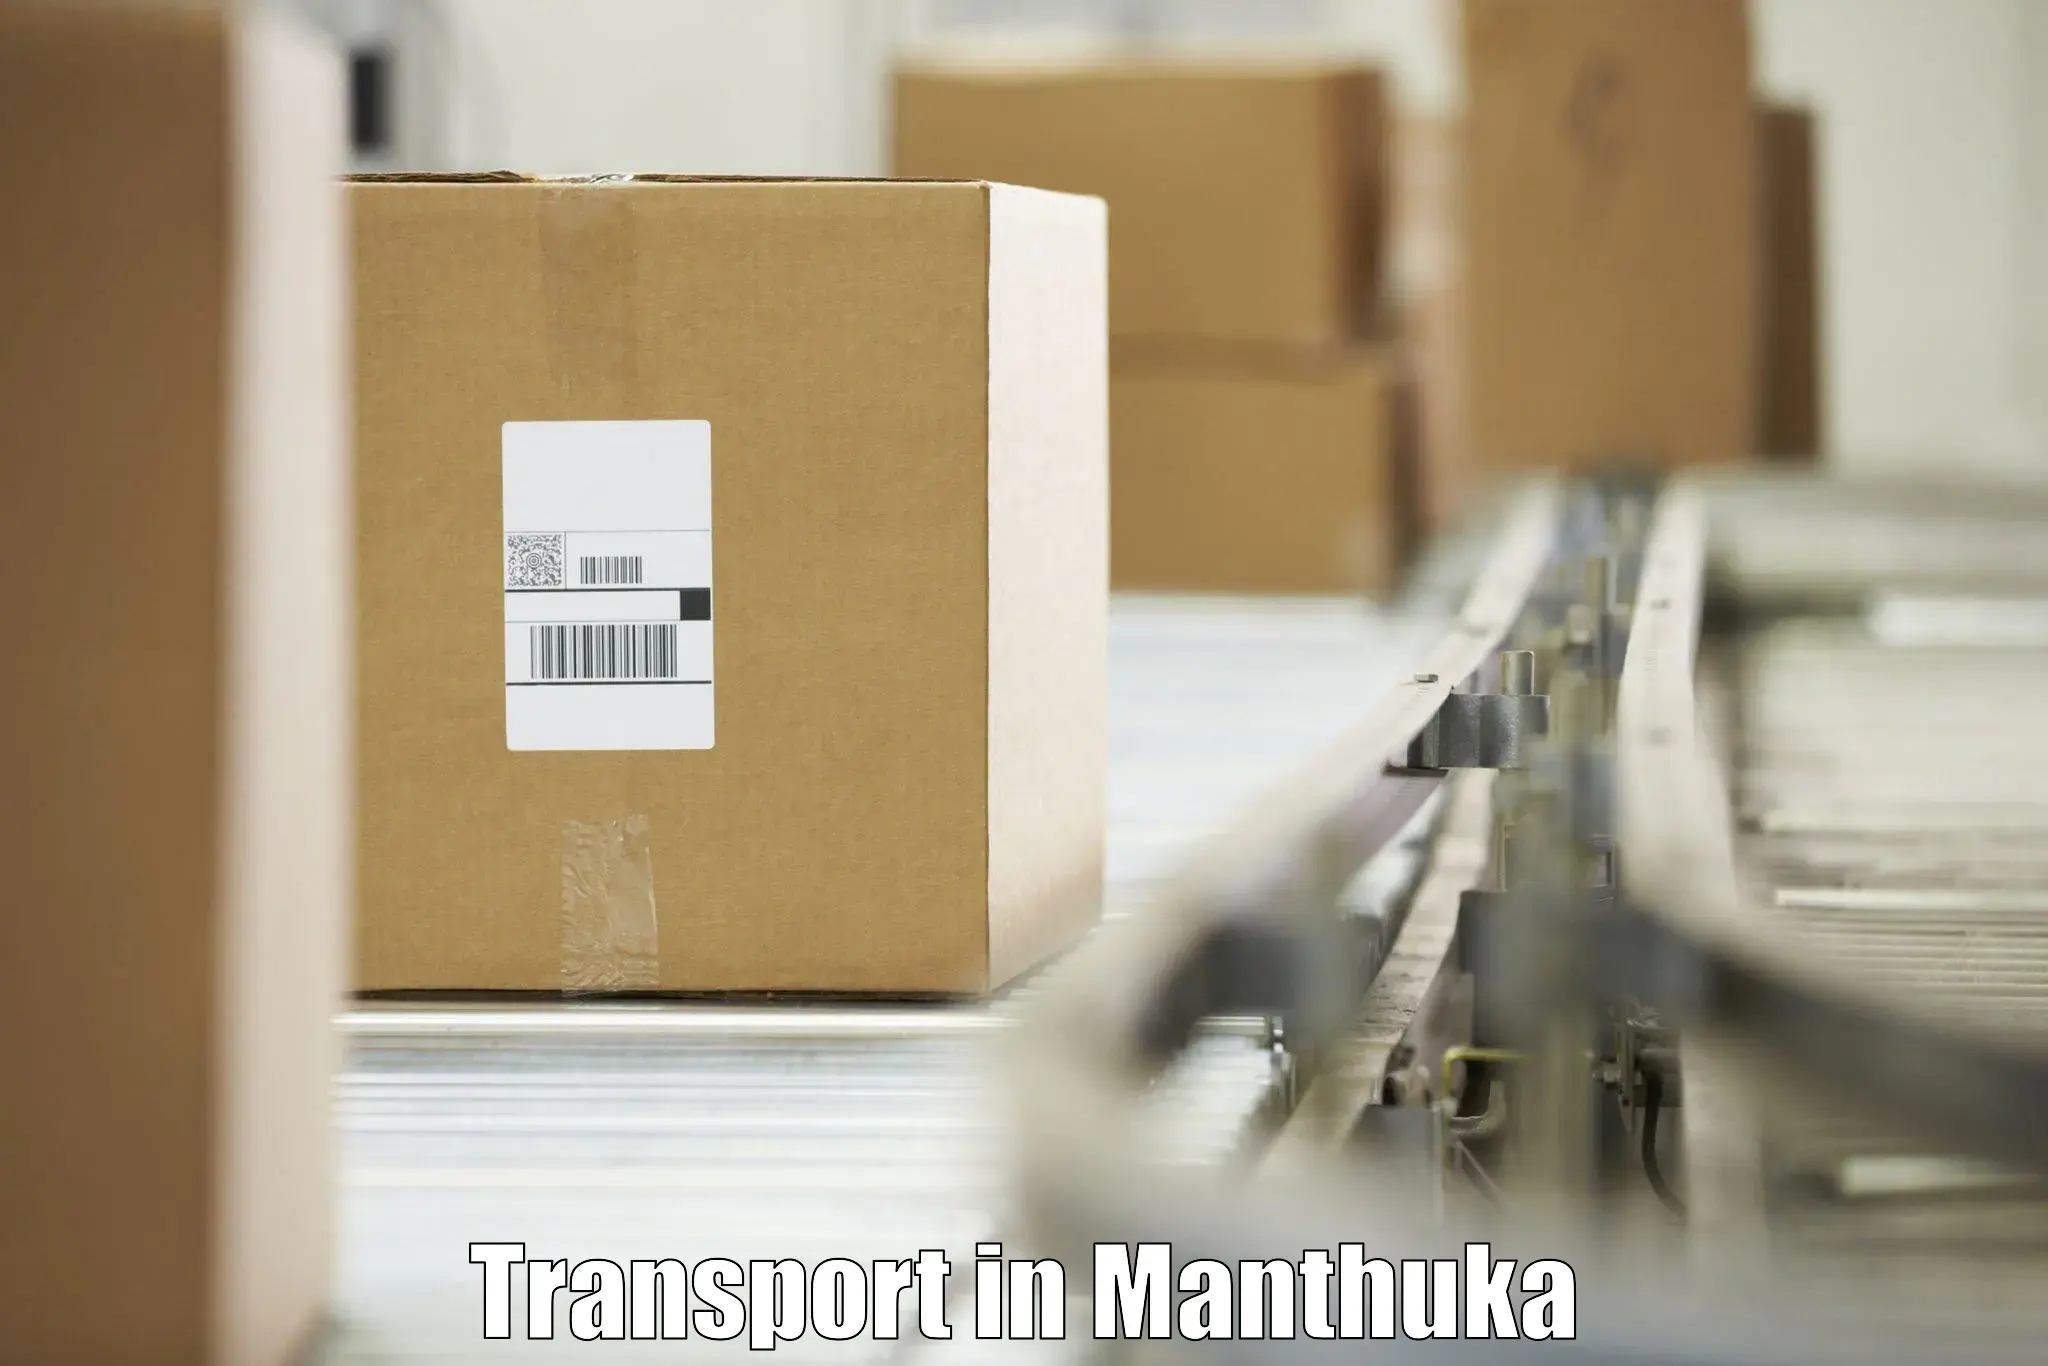 Online transport service in Manthuka